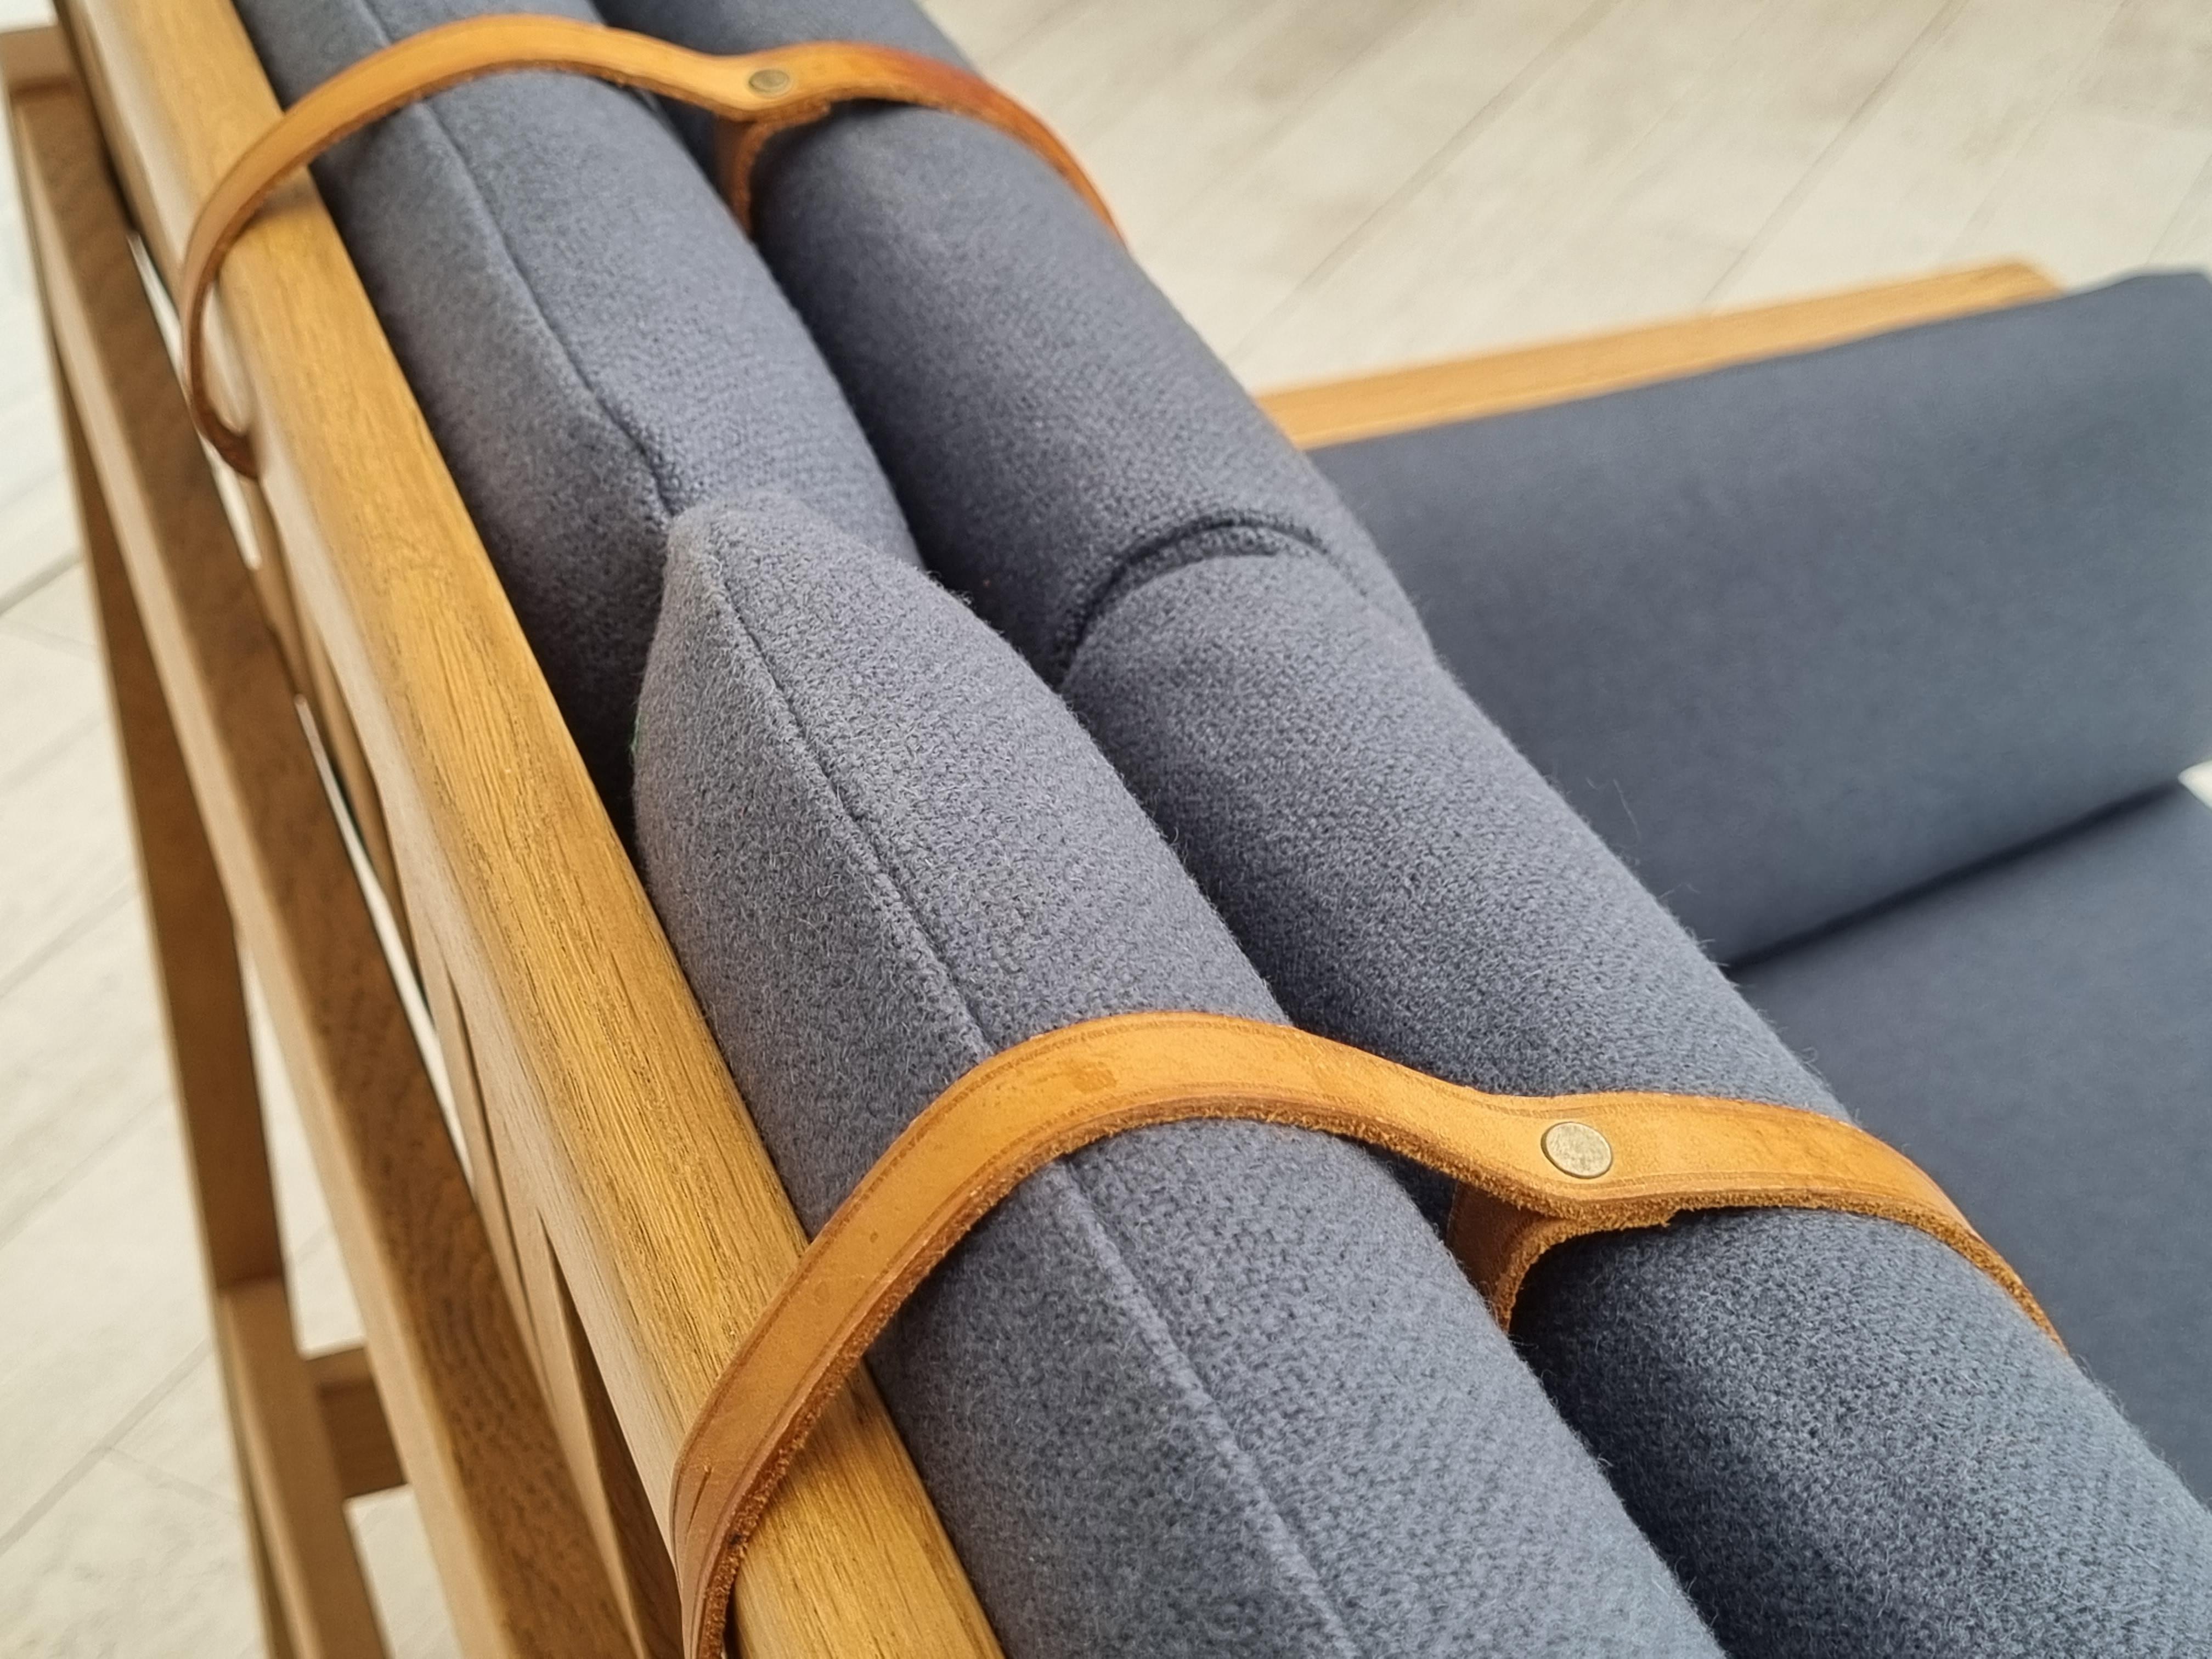 Années 70, design danois de Børge Mogensen, canapé 2 personnes entièrement rénové, modèle 2252. Coussins et fond élastique du canapé neufs. Tissu en laine pour meubles de qualité, de couleur grise. Bandes de cuir originales. Rénové juste après le